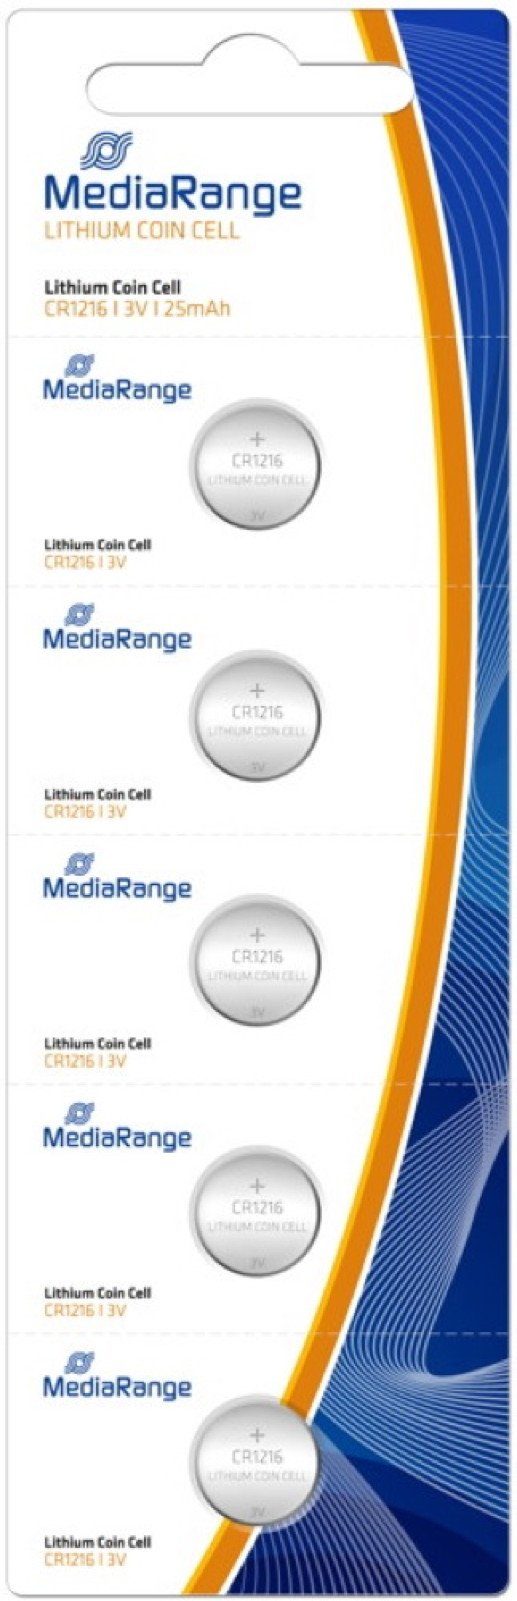 Batterien Mediarange 1216 5 Mediarange Lithium Knopfzelle CR 5er im Blister